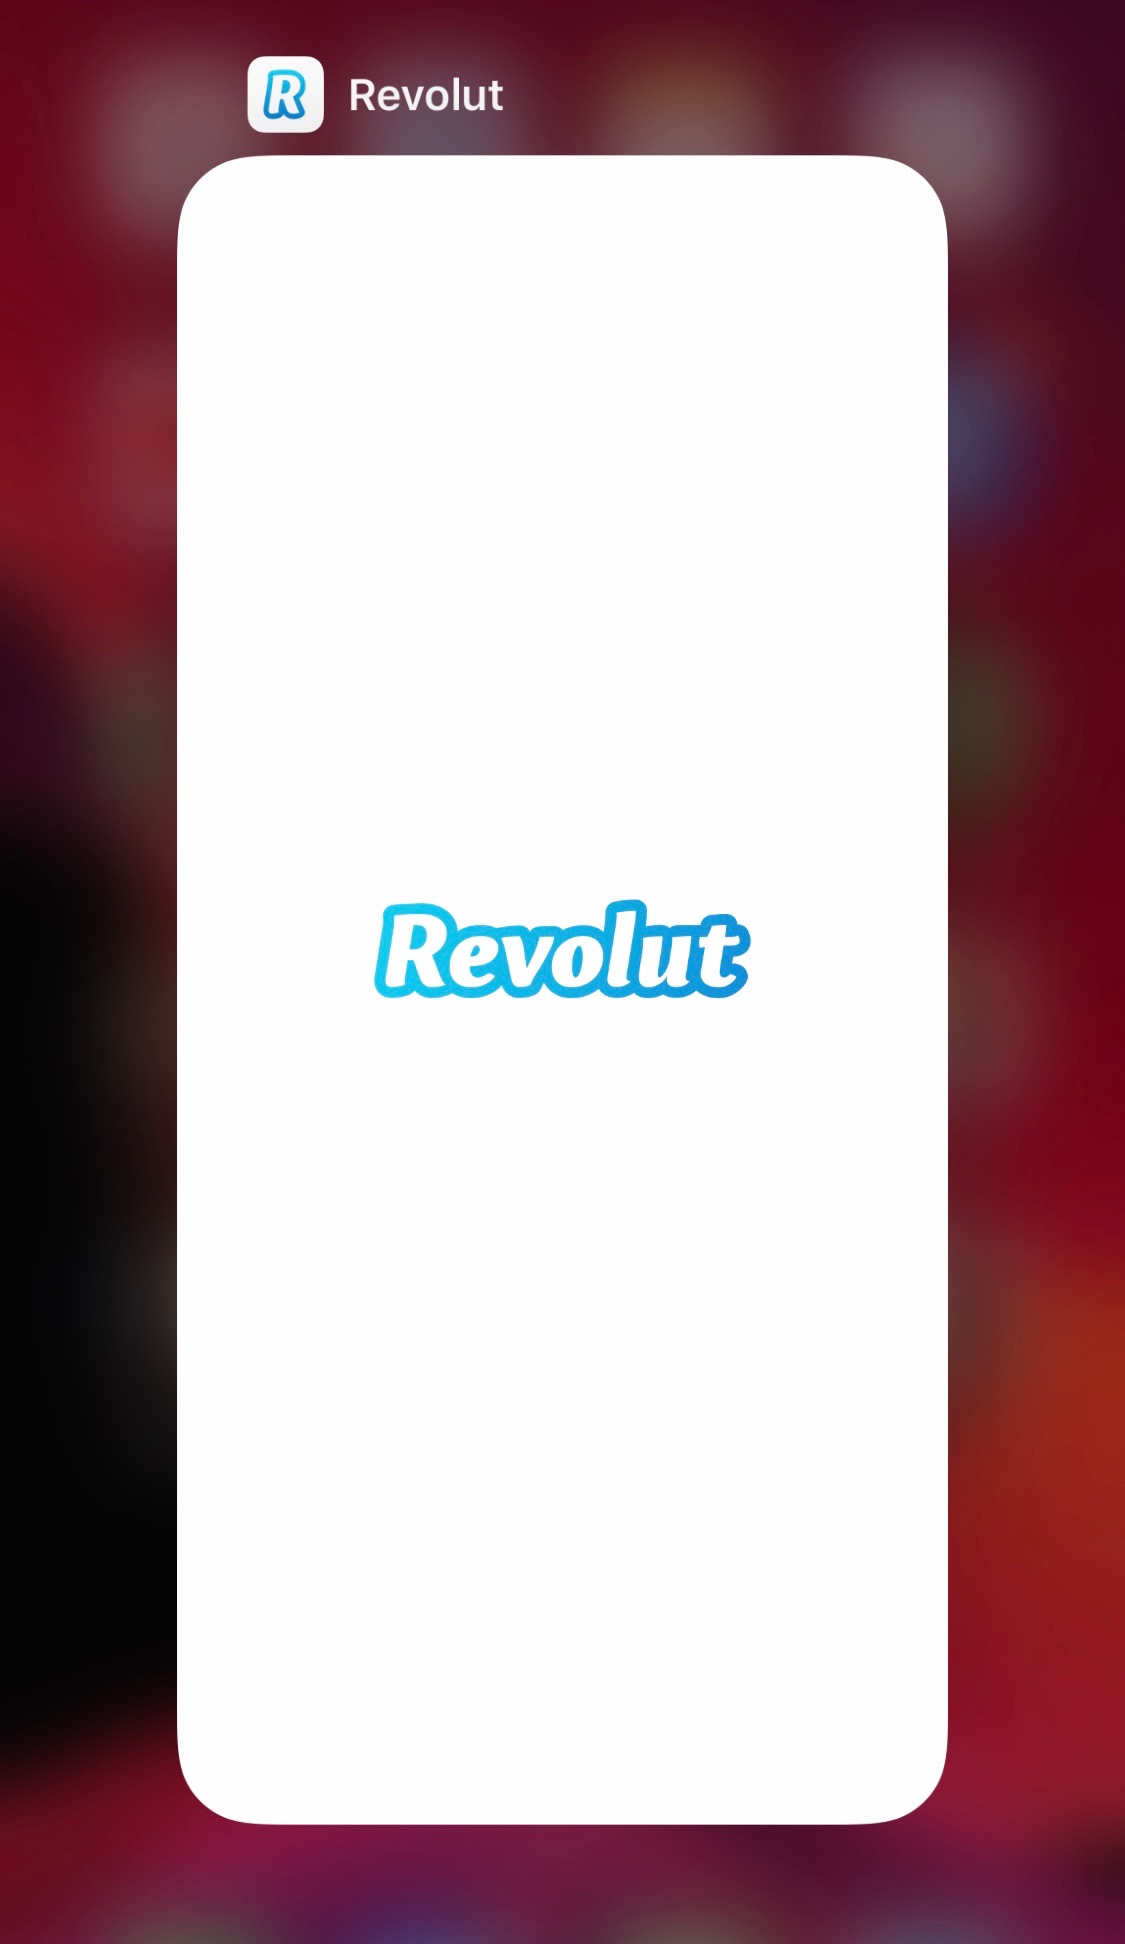 Revolut Not Working in iOS 13 (Revolut App Crash) [How To Fix]